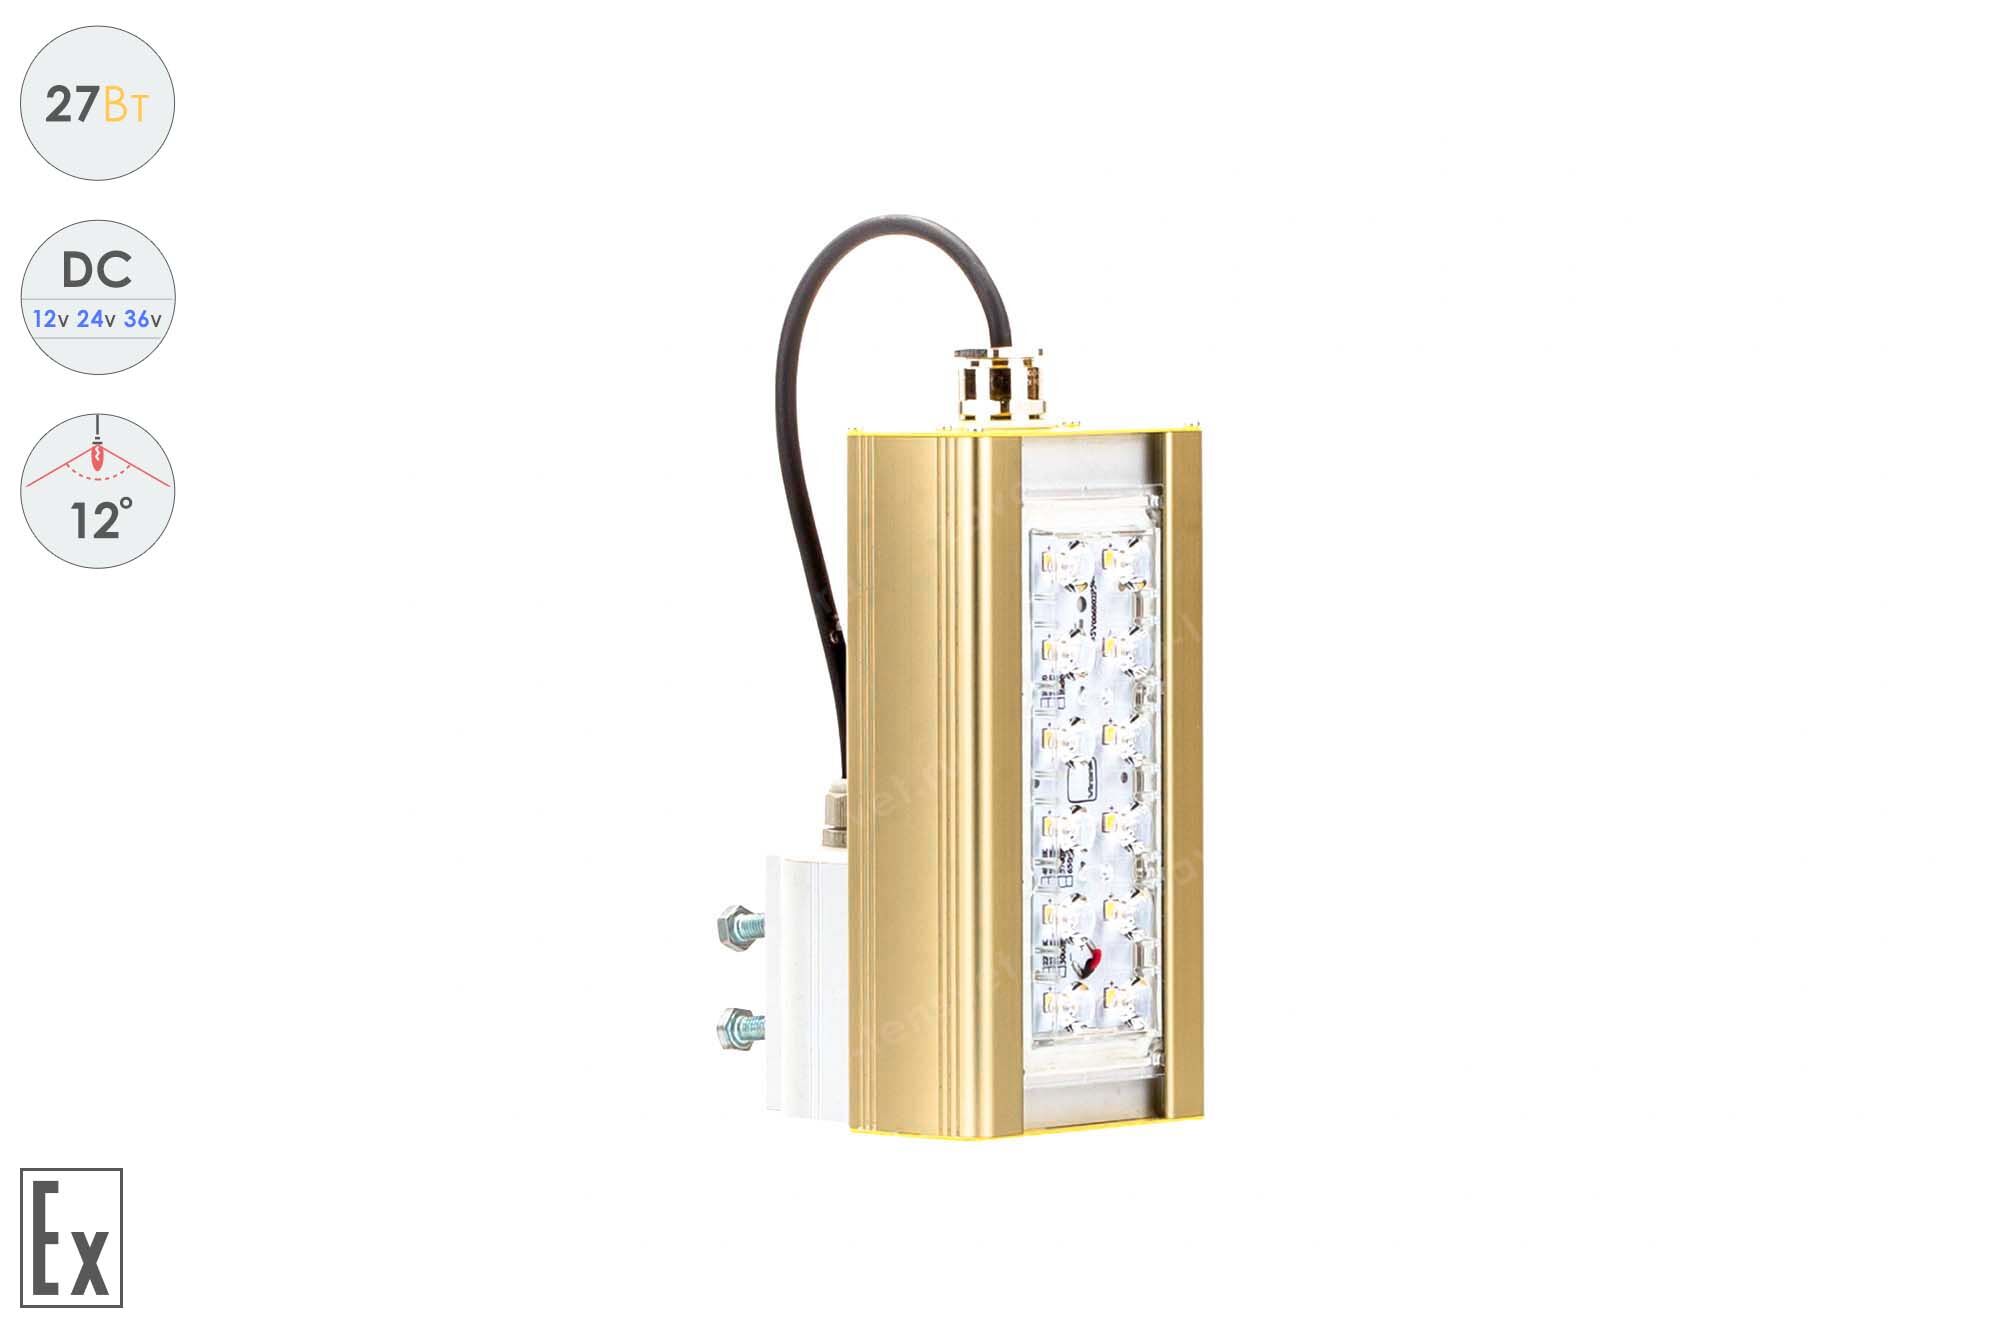 Светодиодный светильник Низковольтный Прожектор Взрывозащищенный GOLD, консоль K-1, 27 Вт, 12°